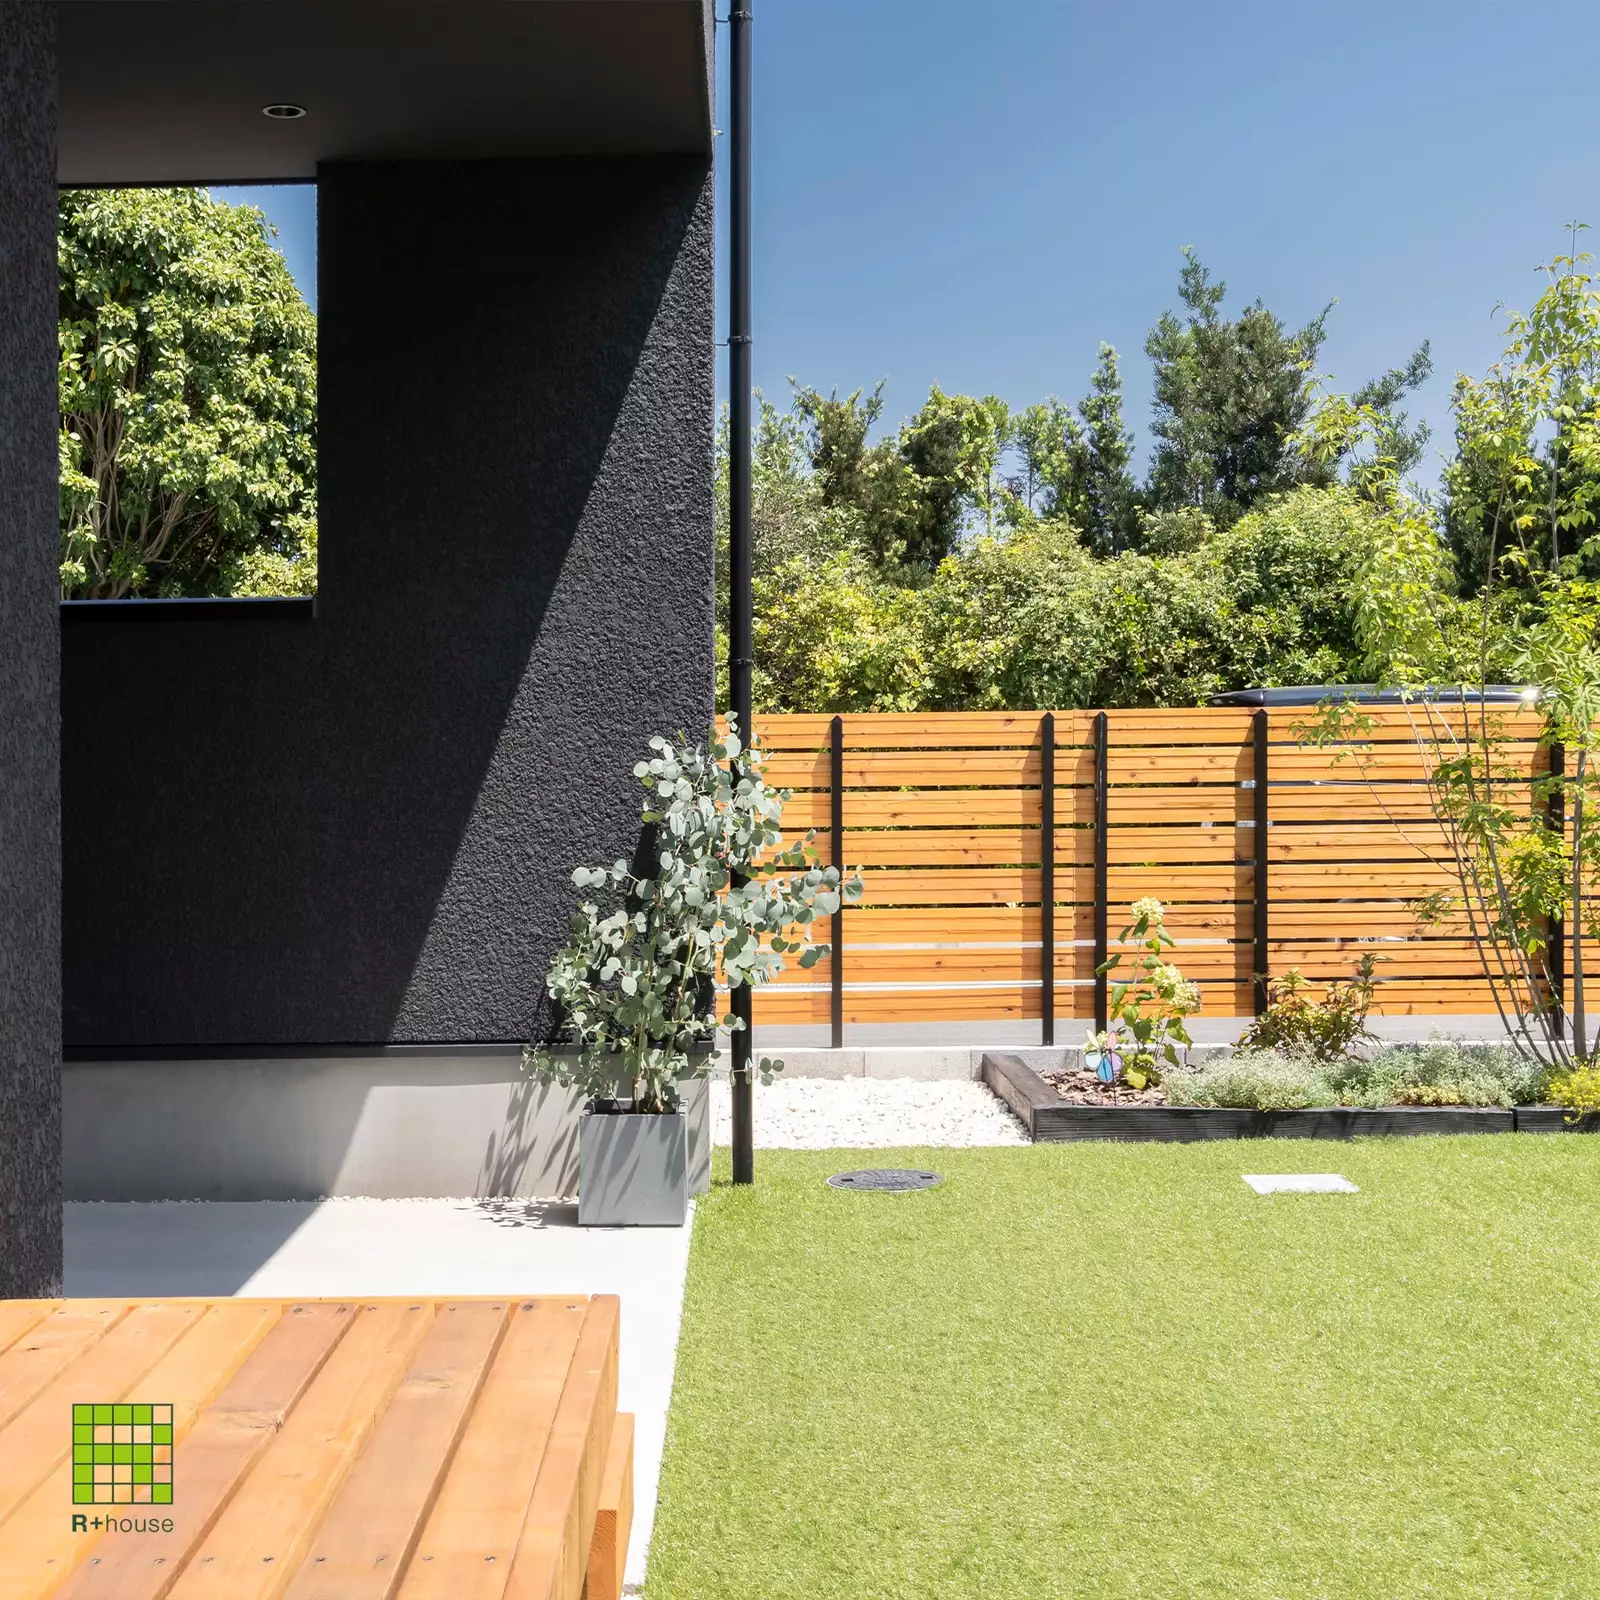 R+houseの物件の庭の写真です。ガレージから抜けてくると芝生の庭が。木でできたデッキと塀がおしゃれ